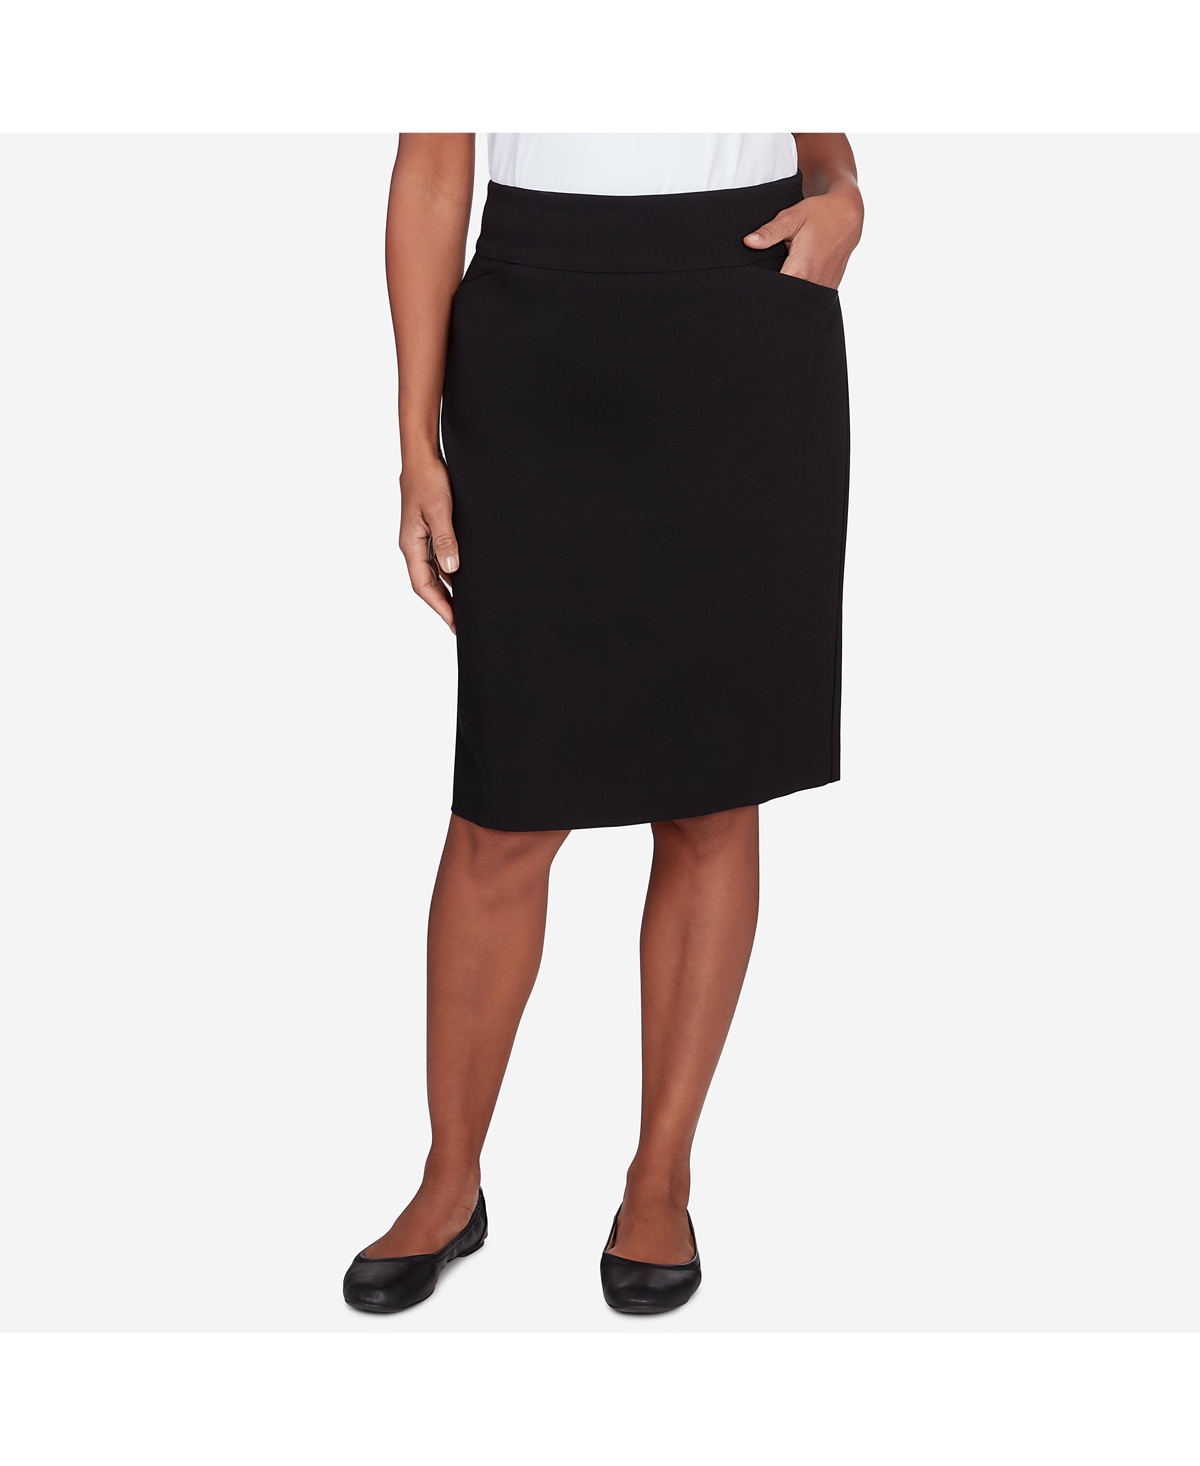 Petite Classic Stretch Knee Length Skirt - Black